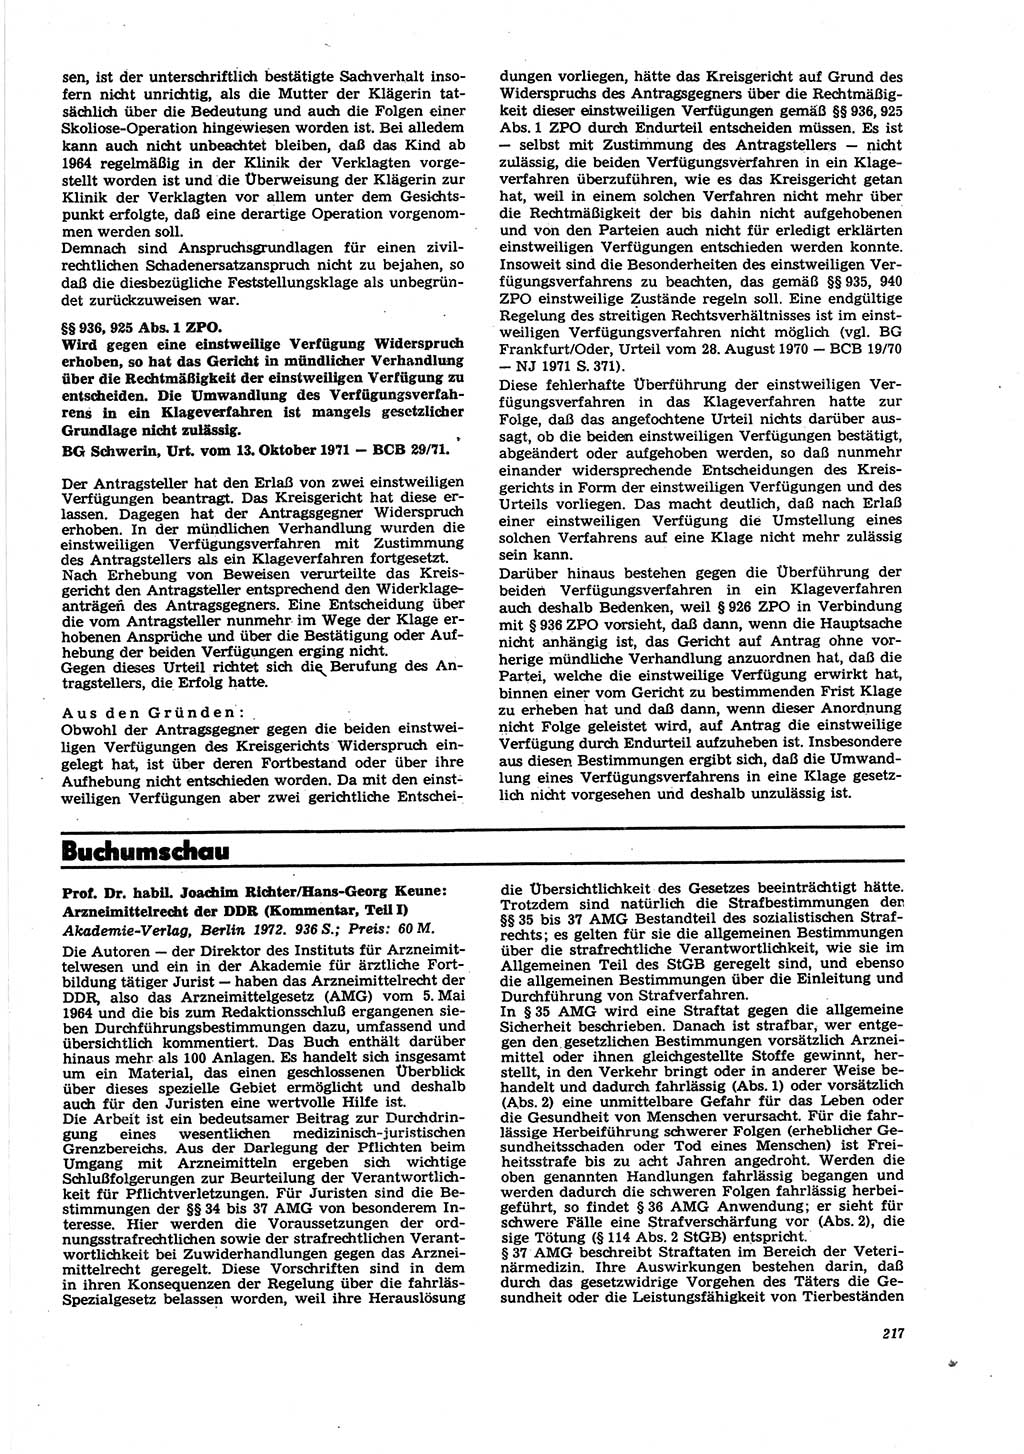 Neue Justiz (NJ), Zeitschrift für Recht und Rechtswissenschaft [Deutsche Demokratische Republik (DDR)], 27. Jahrgang 1973, Seite 217 (NJ DDR 1973, S. 217)